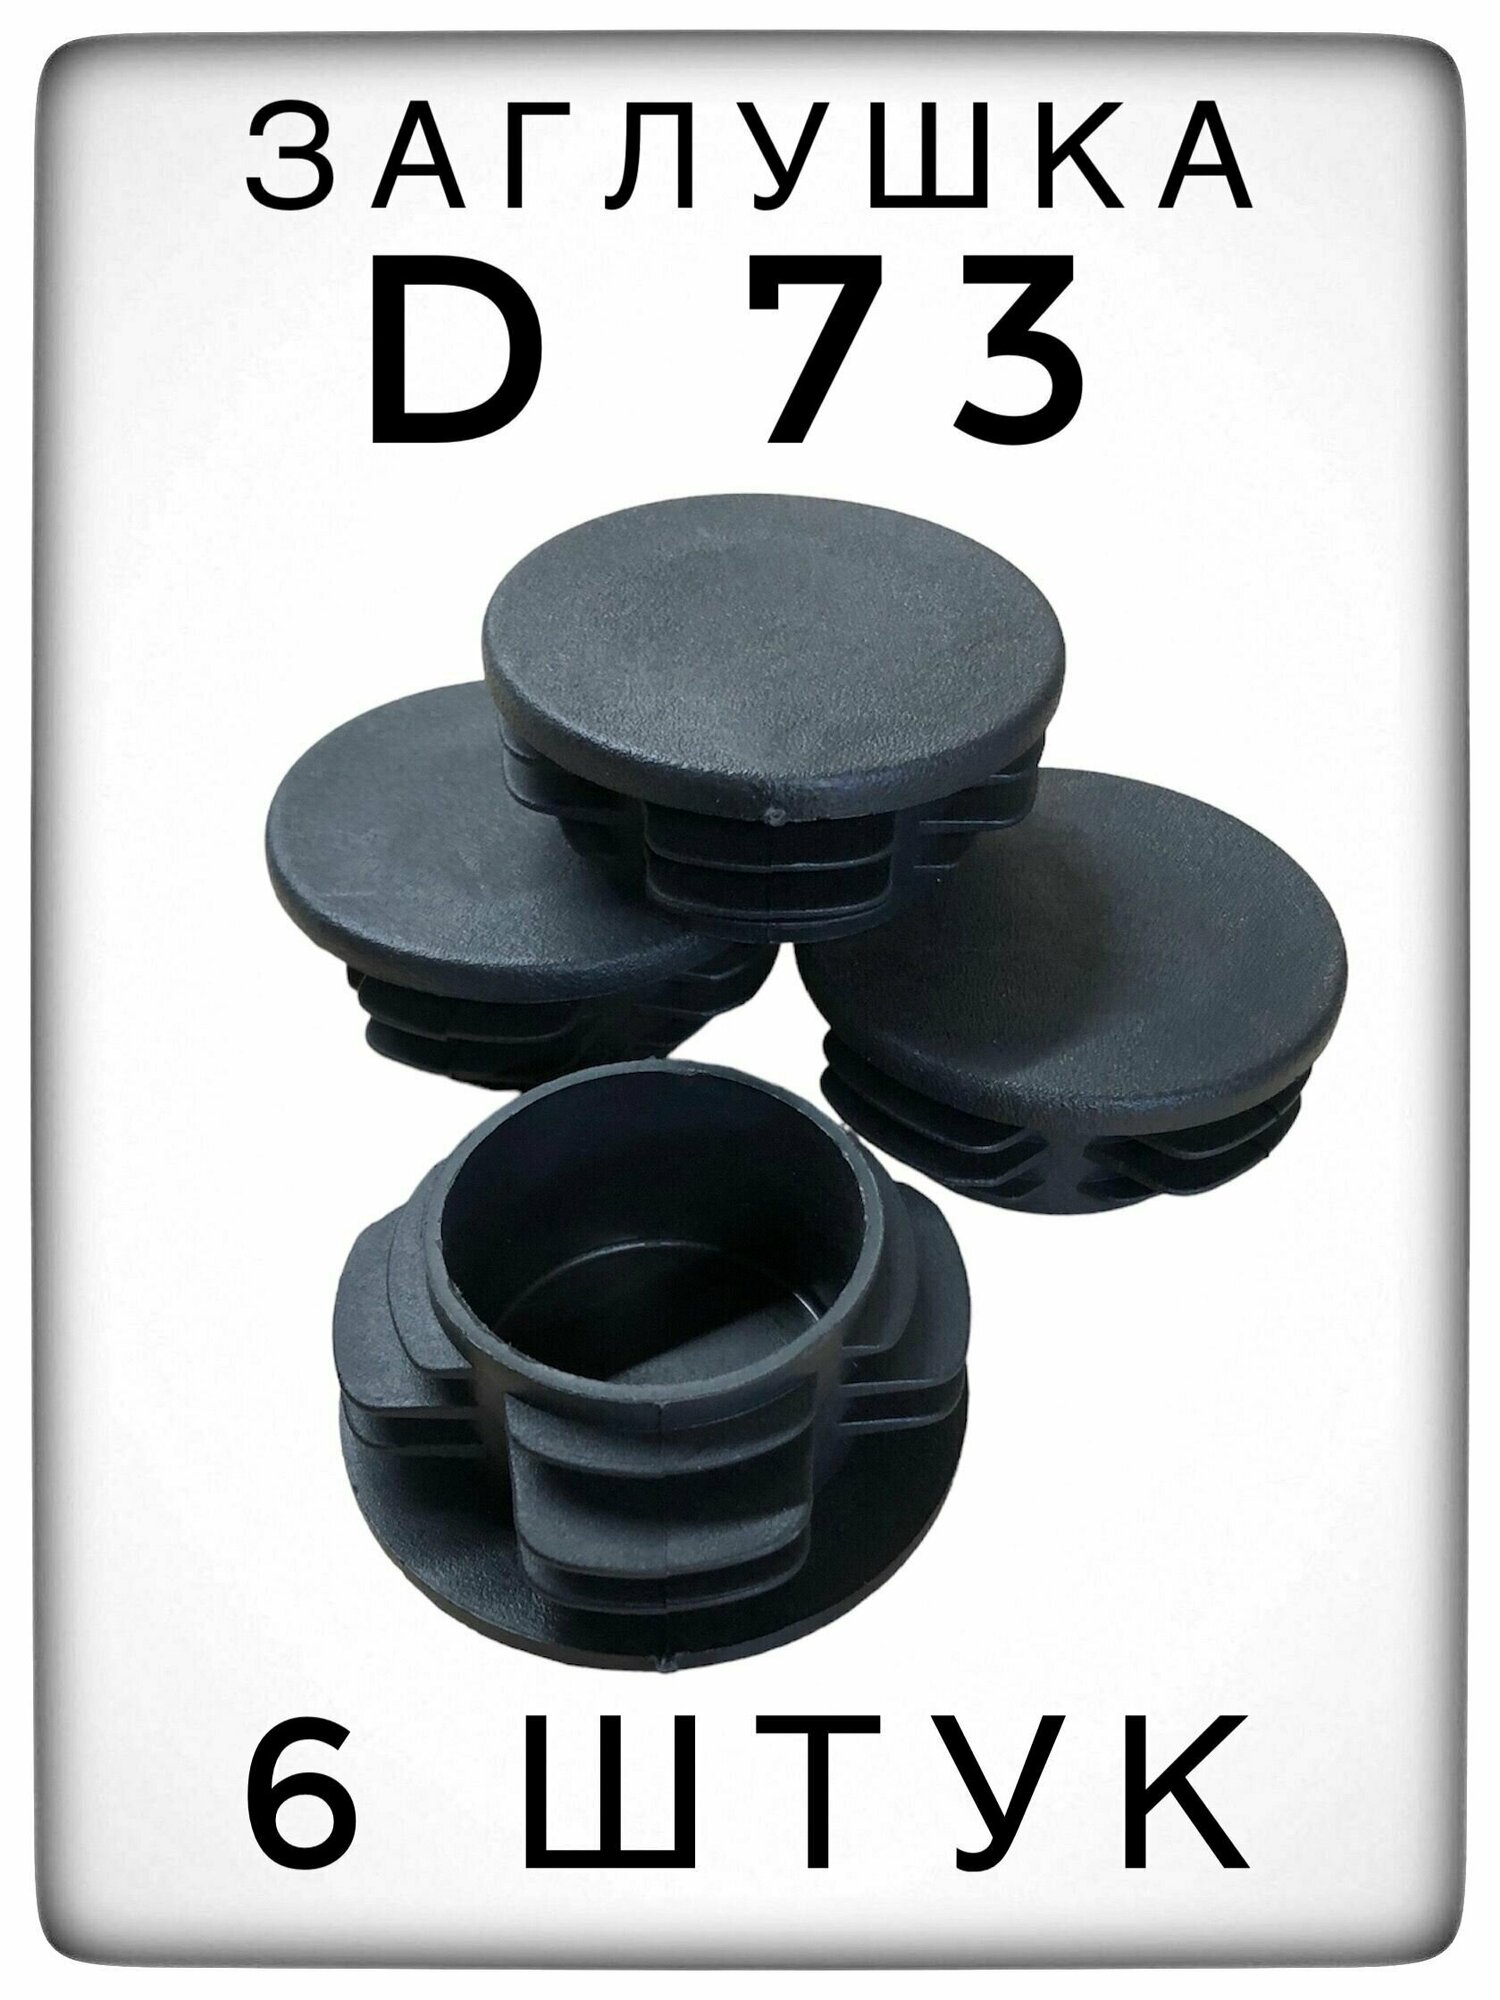 Заглушка Д73 (6 штук) пластиковая для металлической трубы НКТ